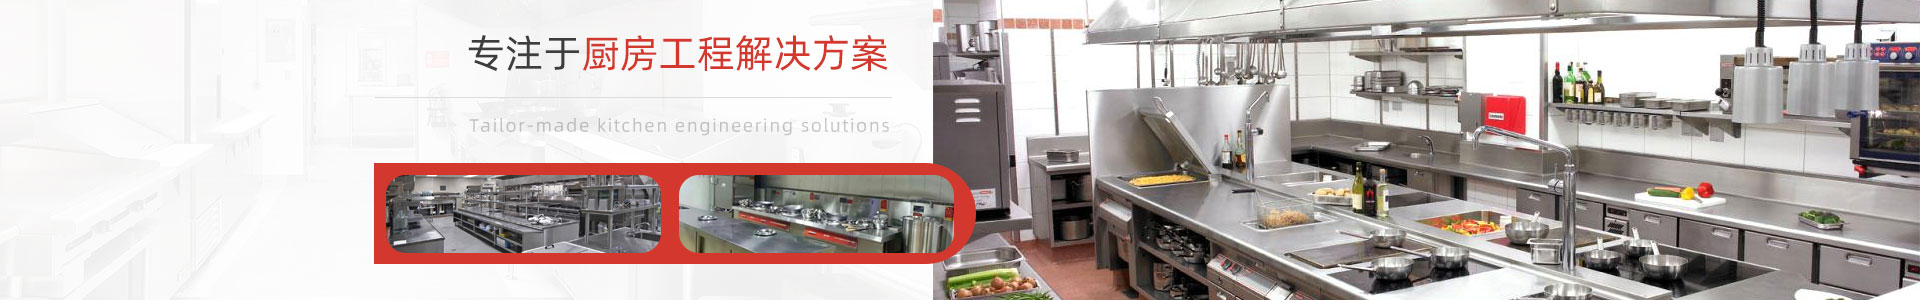 深圳市宏润厨房设备有(yǒu)限公司-食品机械